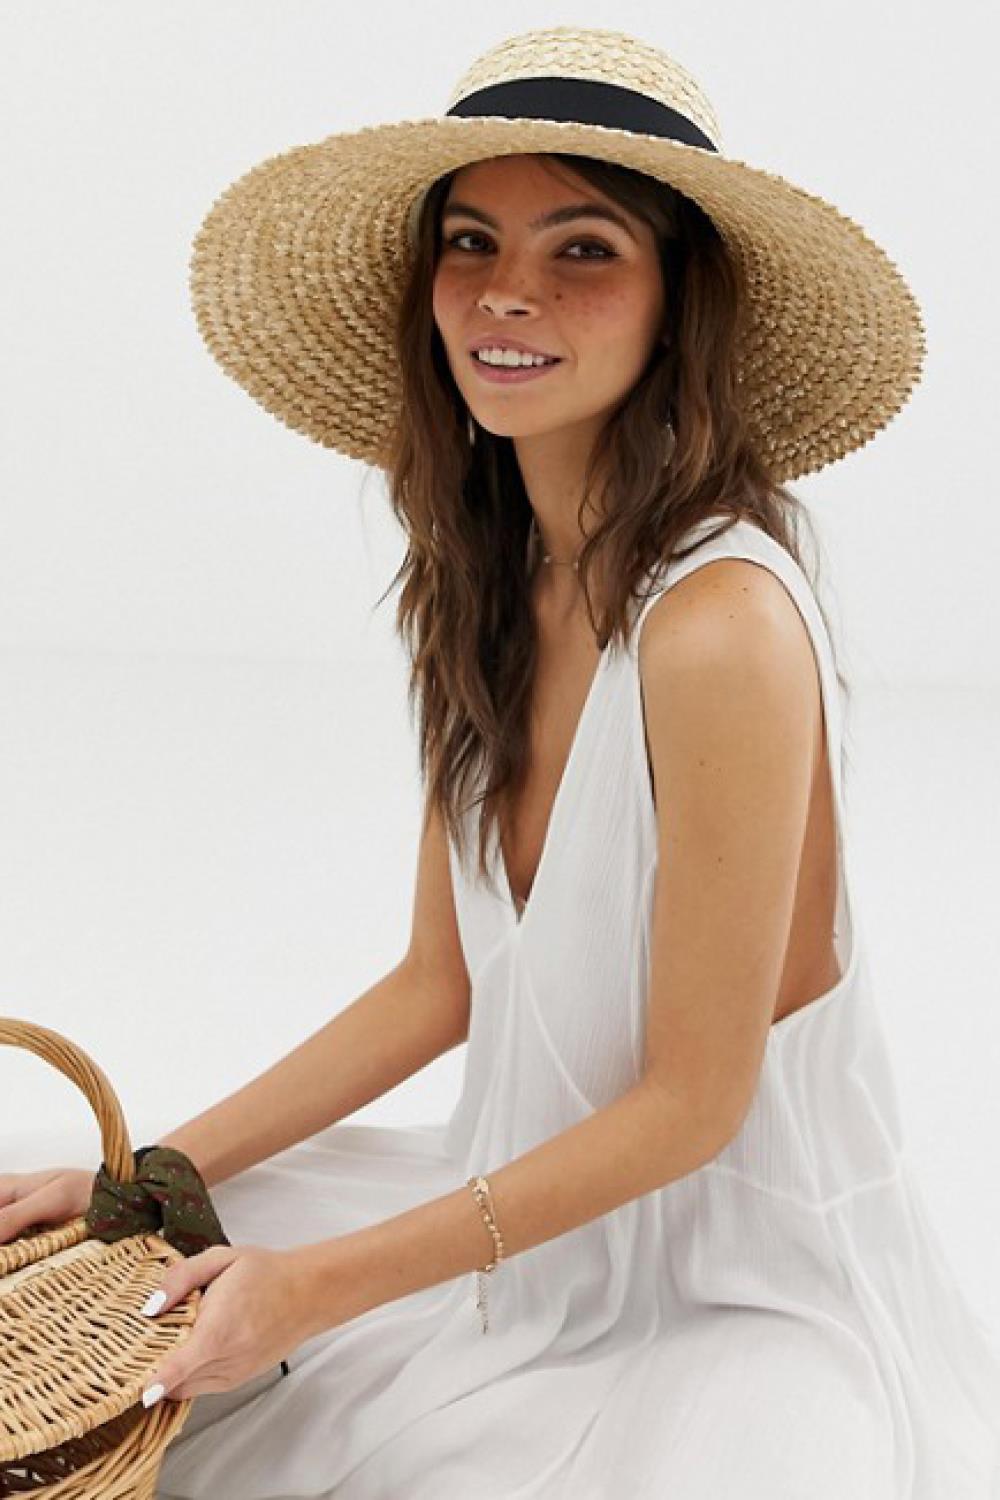 estilo boho verano 2019 sombrero asos 23,99€